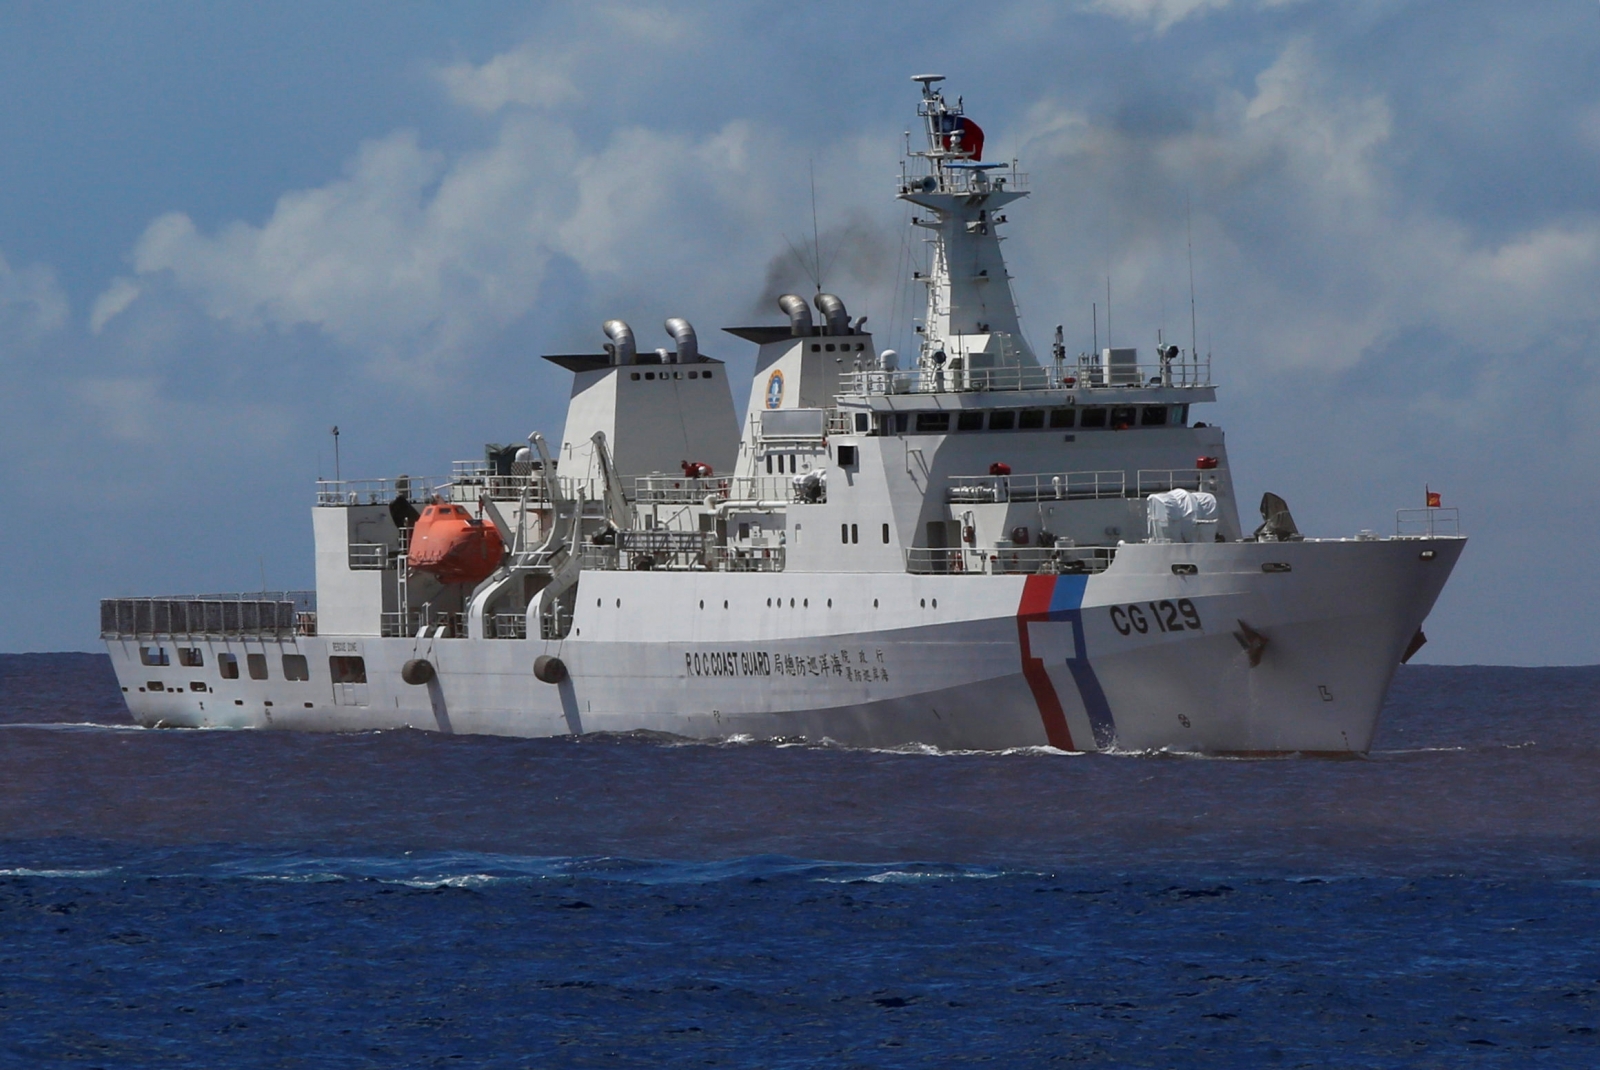 Taiwan coast guard ship